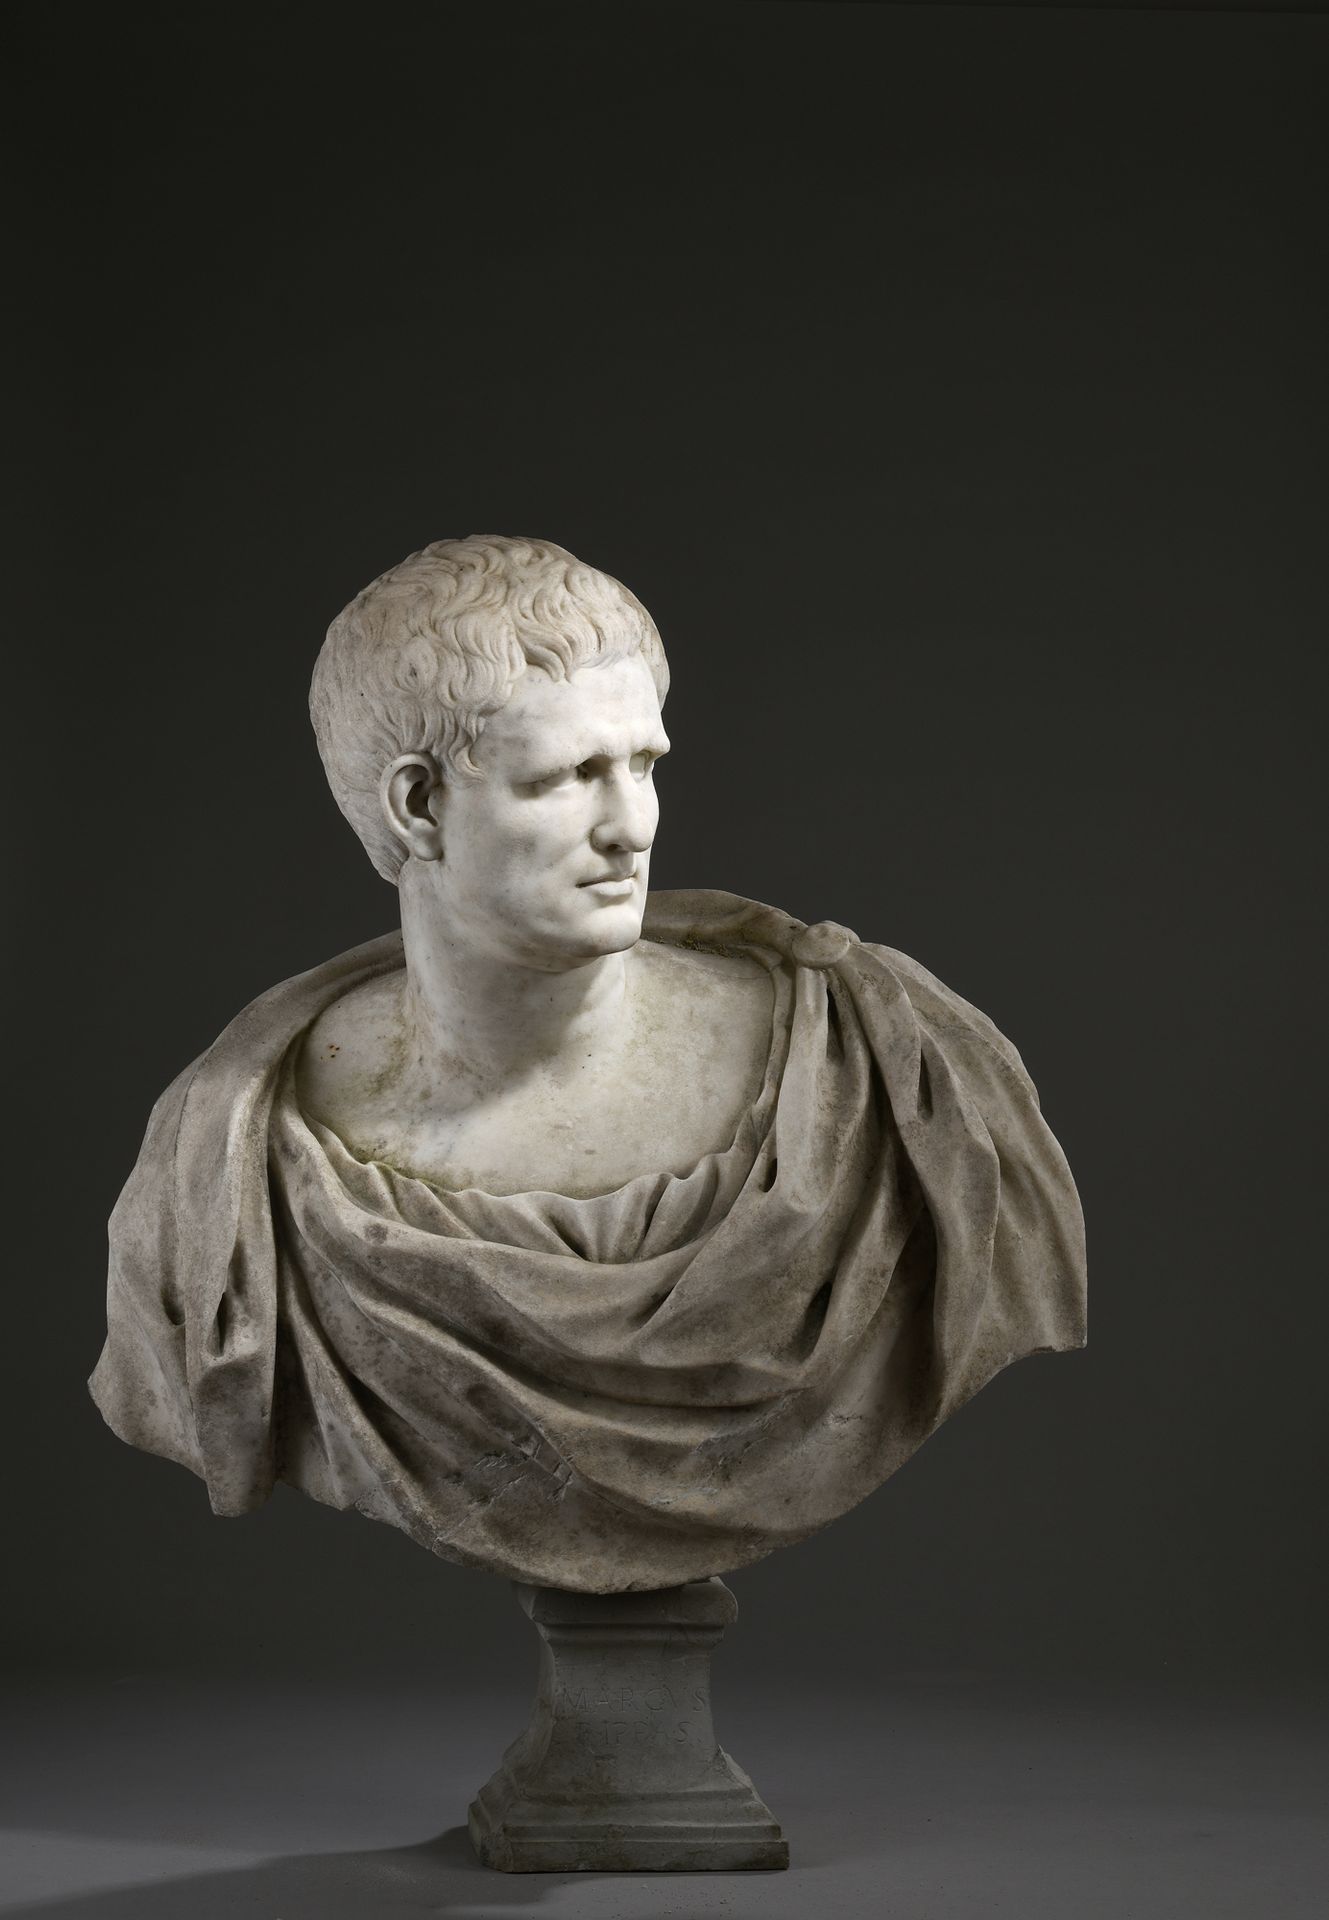 Null 17世纪晚期法国学校的仿古作品

马库斯-维斯帕尼乌斯-阿格里帕皇帝的画像（公元前63年-公元前12年）

白色大理石半身像

题为 "MARCUS &hellip;